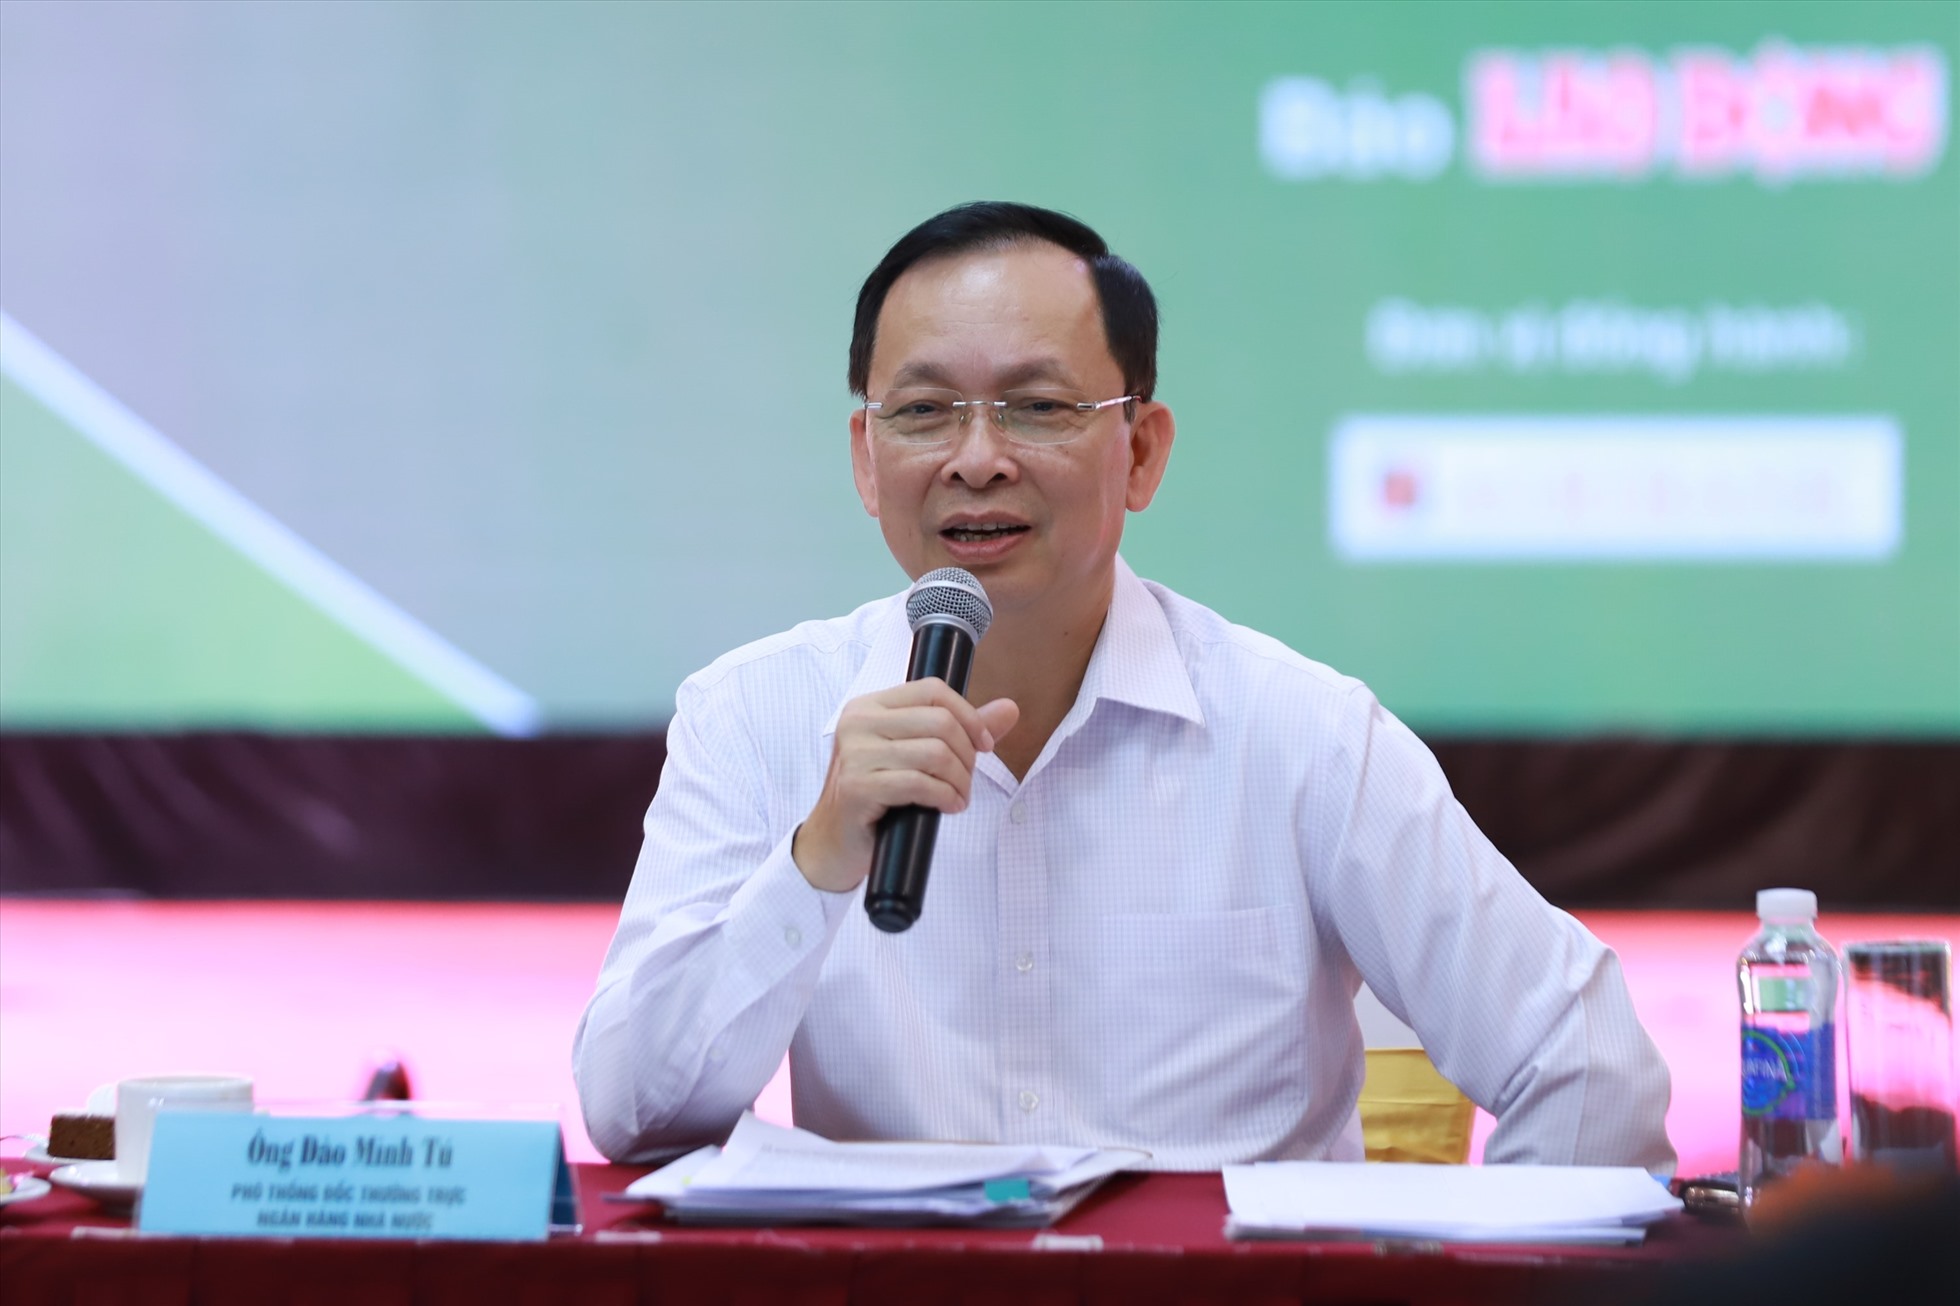 Phó Thống đốc thường trực Ngân hàng Nhà nước - ông Đào Minh Tú phát biểu tại hội thảo.